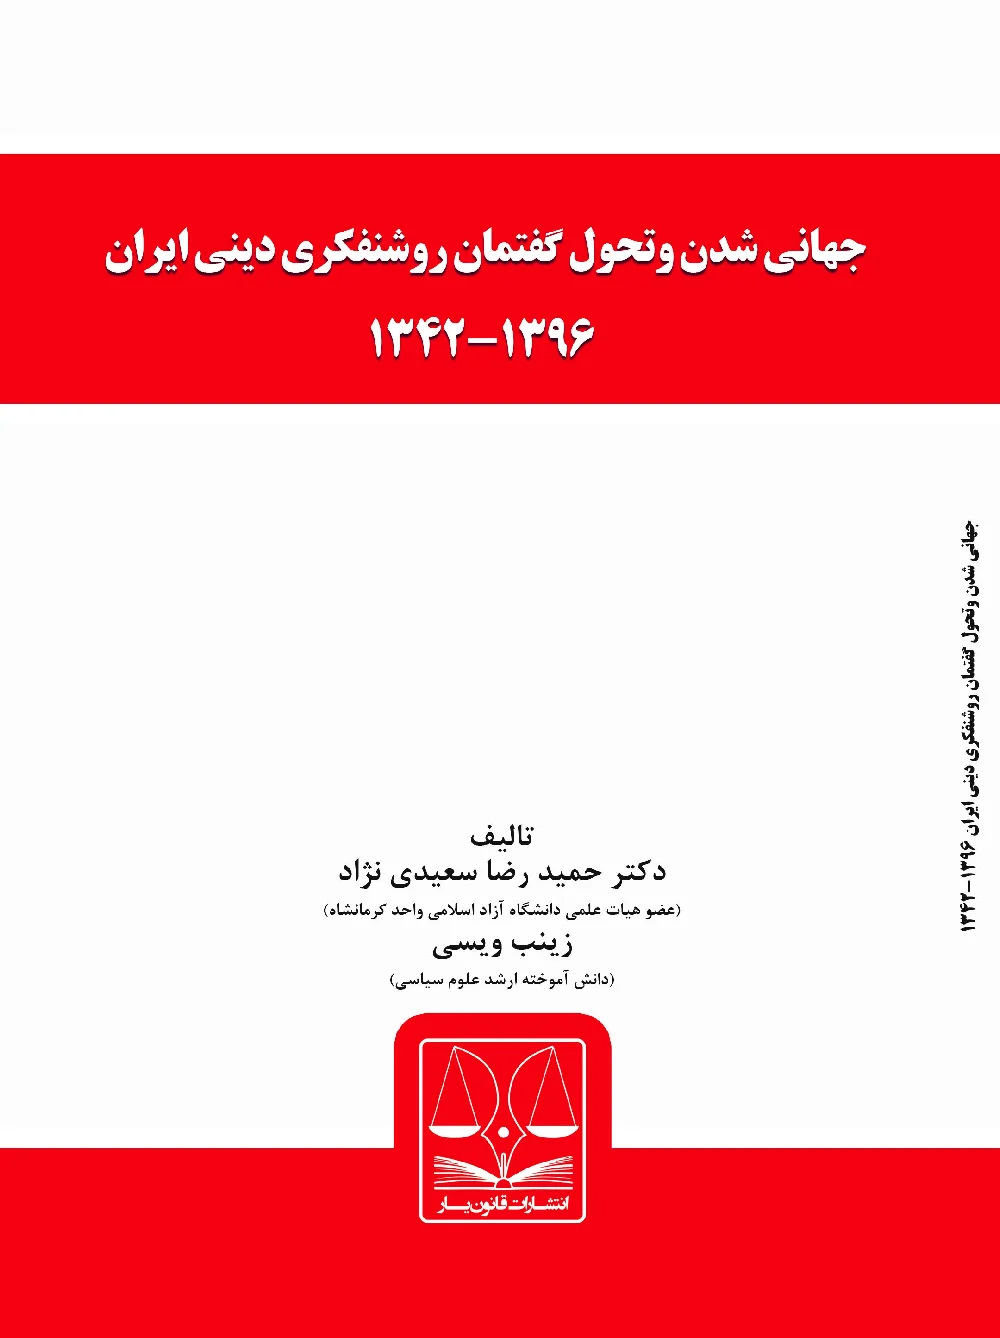 جهانی شدن و تحول گفتمان روشنفکری دینی ایران ۱۳۹۶-۱۳۴۲